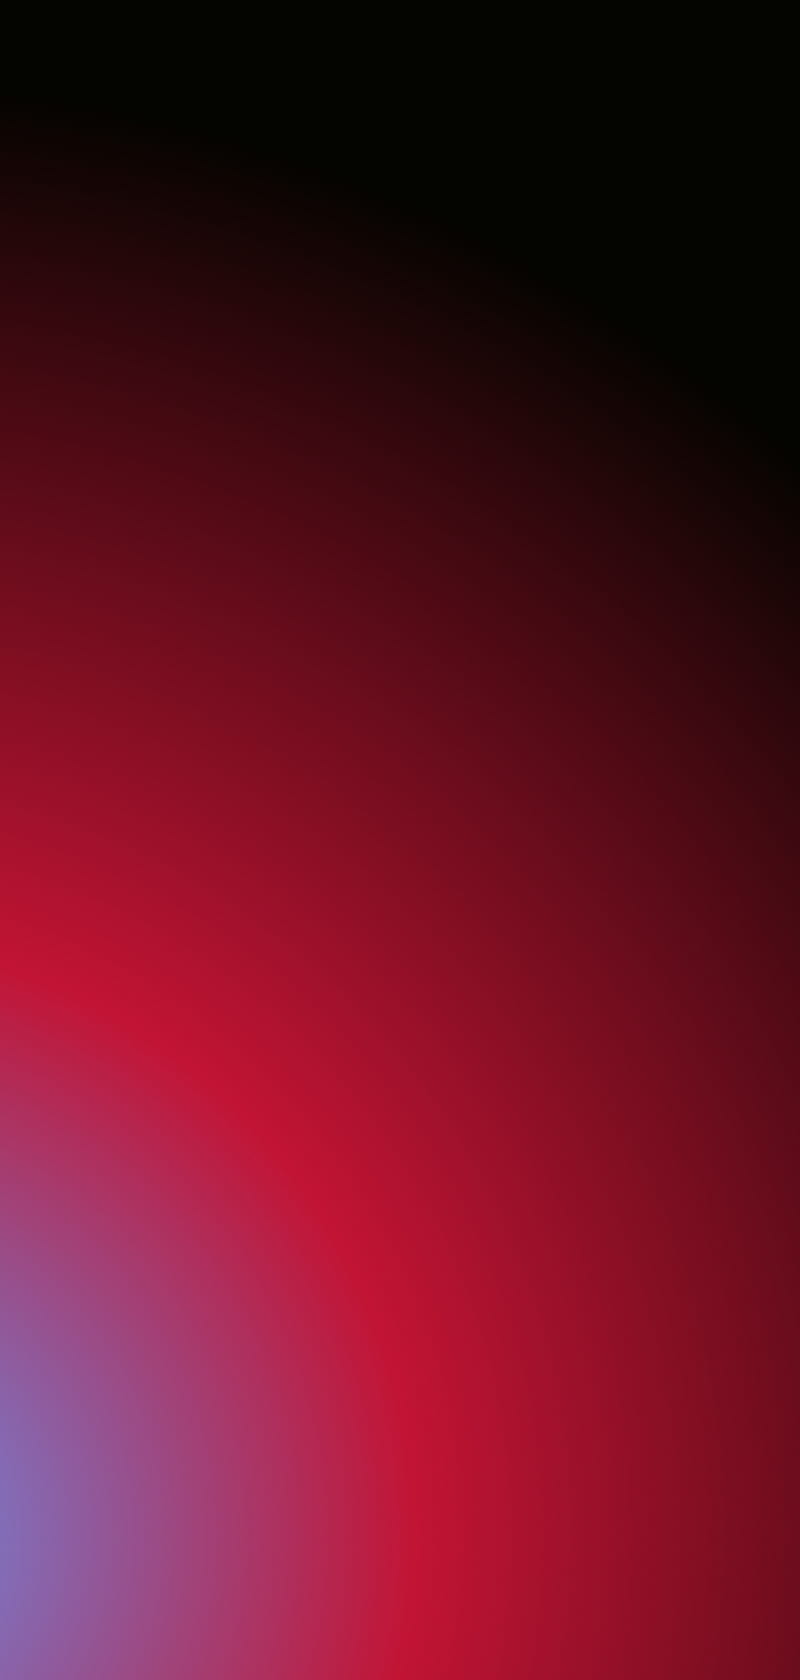 Red Notch: Nắm bắt lợi thế của chiếc điện thoại với đồ họa hiện đại và nổi bật. Hình ảnh Red Notch sẽ khiến bạn quên đi mọi thứ xung quanh, để đắm mình trong những đường cong thanh lịch của thiết kế đầy thời trang này.